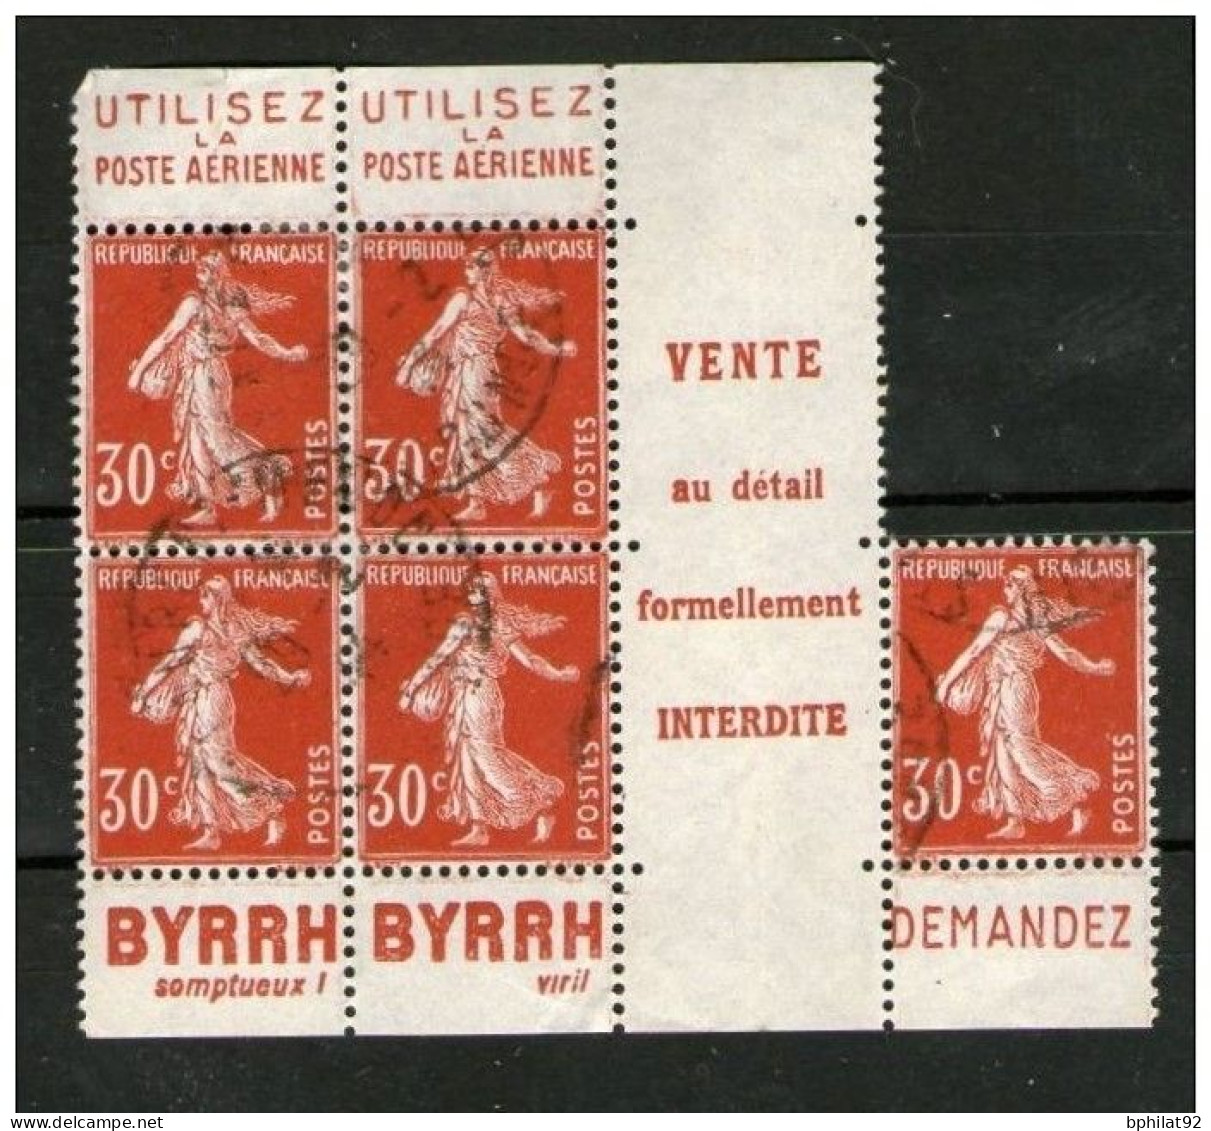 !!! 30 C SEMEUSE : BLOC DE 5 AVEC PUBS BYRRH - POSTE OBLITERE - Used Stamps